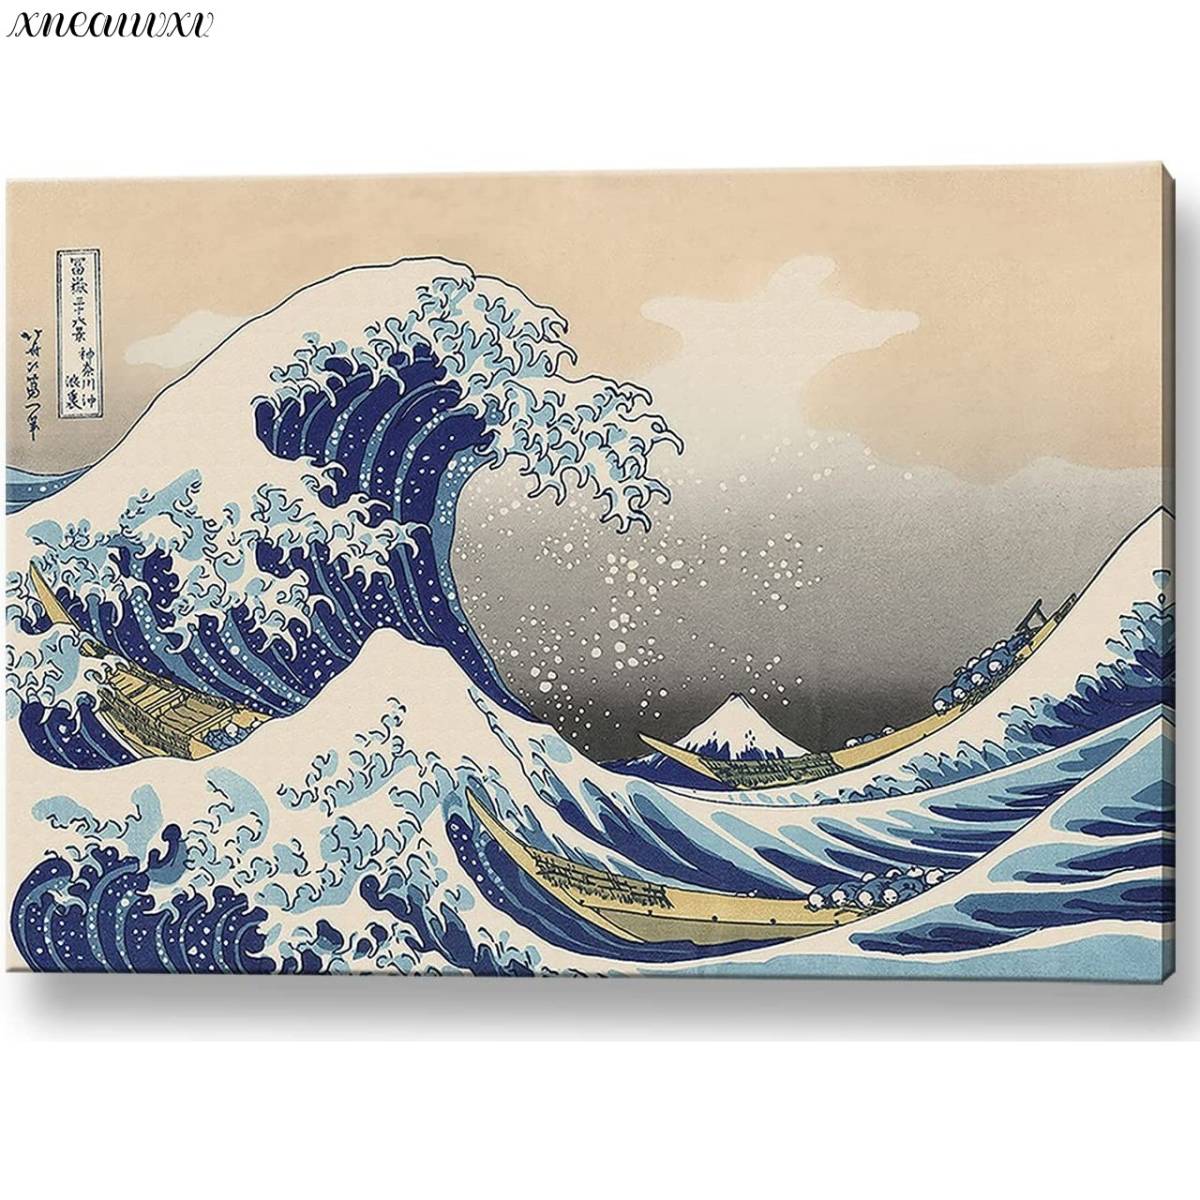 Katsushika Hokusai-Kunsttafel, 36 Ansichten des Berges Fuji, die große Welle vor Kanagawa, Reproduktion, spektakuläre Aussicht, Kunst im japanischen Stil, Dekoration, klassische Naturlandschaft, Meeresmalerei, Innenkunst, Malerei, Ukiyo-e, drucken, Bild eines berühmten Ortes